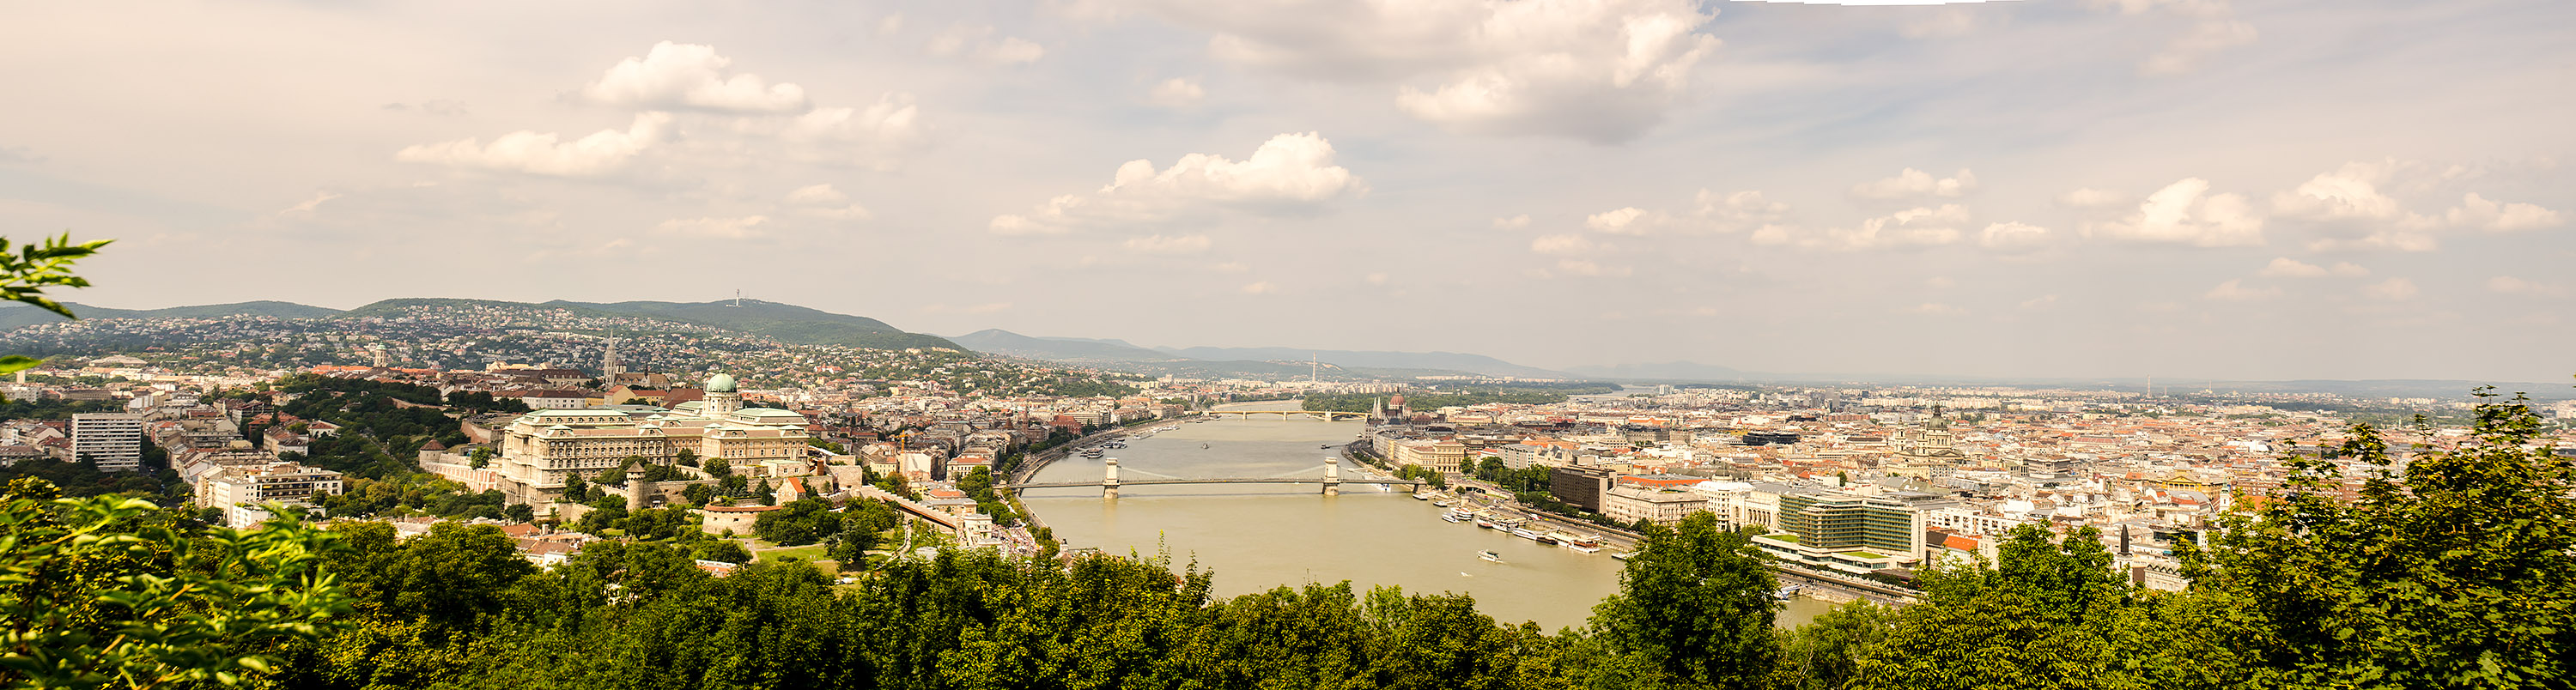 Budapest from Gellert Hill